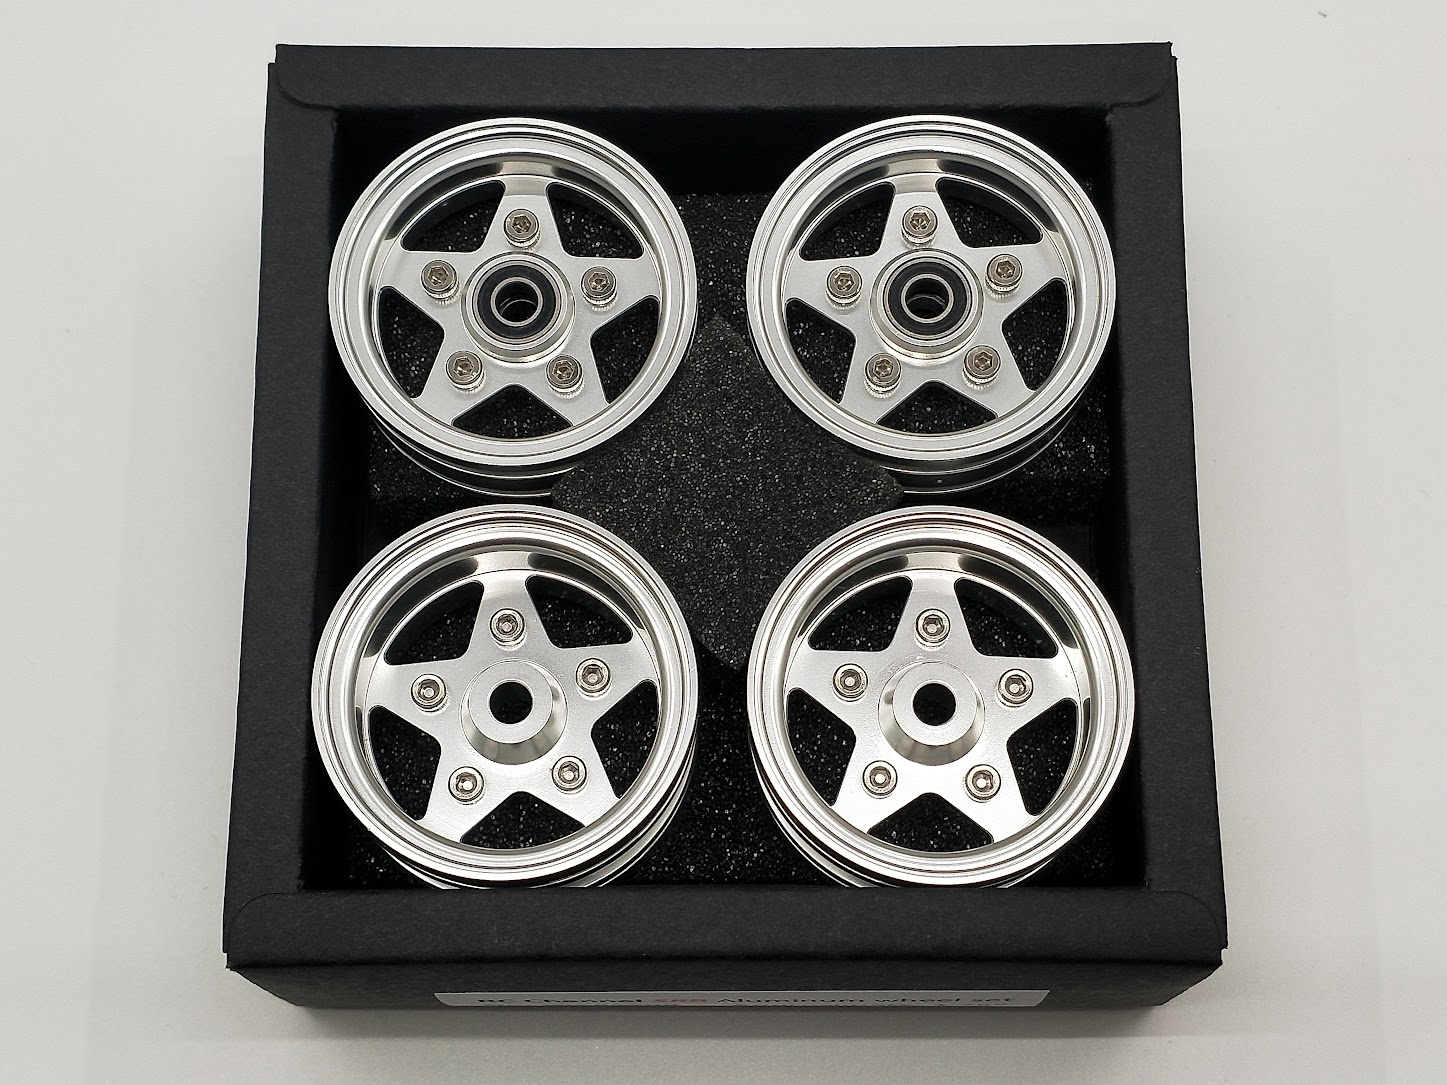 6.TAMIYA FAST ATTACK silver aluminum wheels set